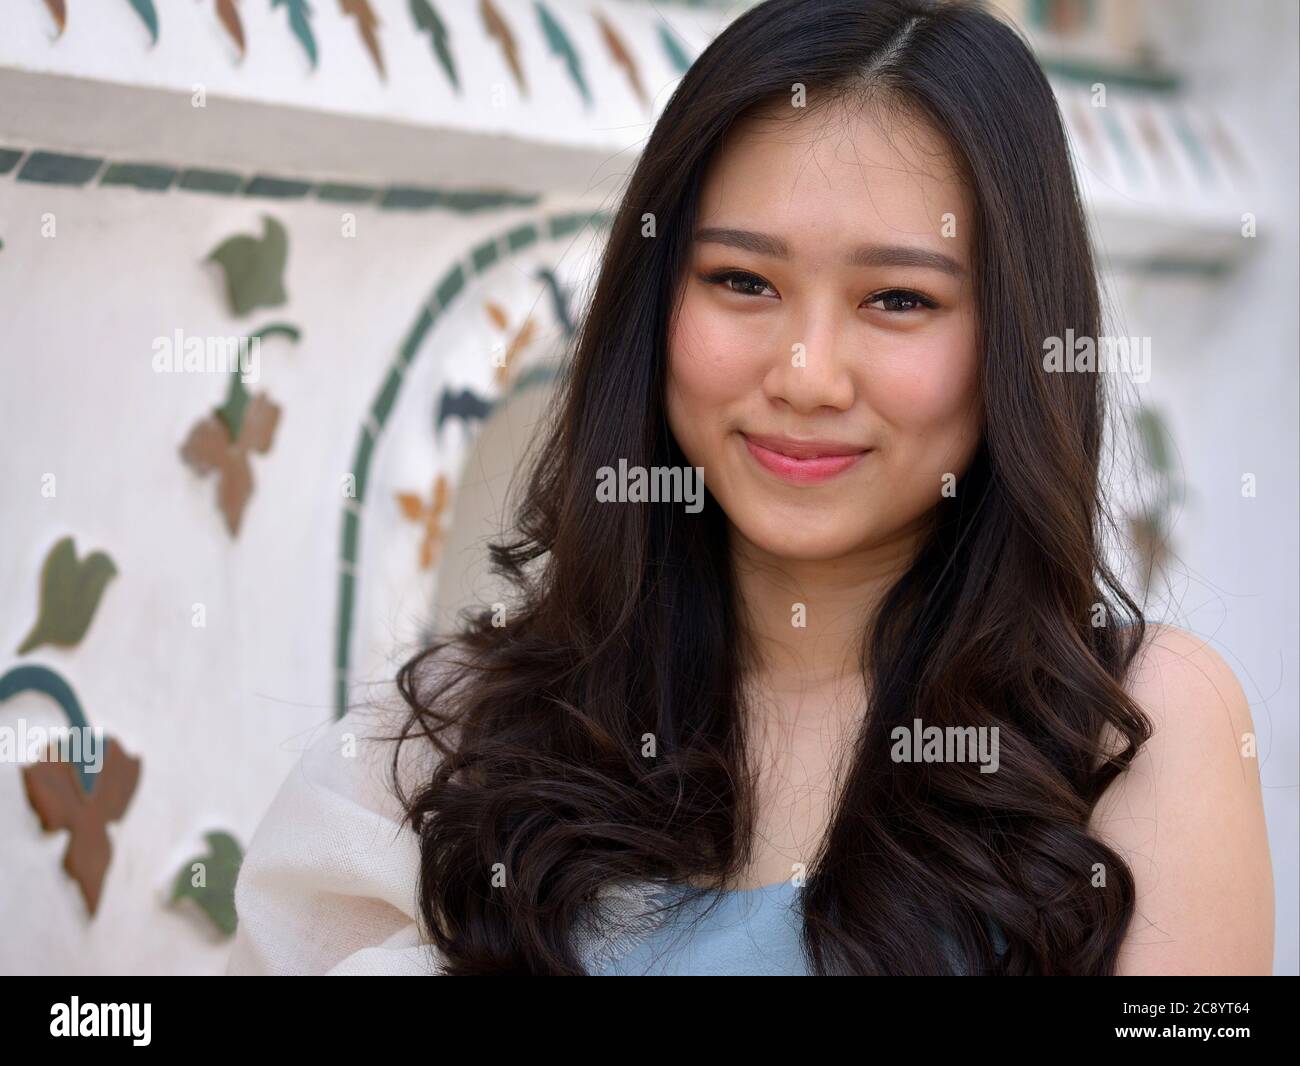 Une jolie fille du Sud-est asiatique aux cheveux longs aux extrémités courbées pose pour la caméra au temple Wat Arun de Bangkok. Banque D'Images